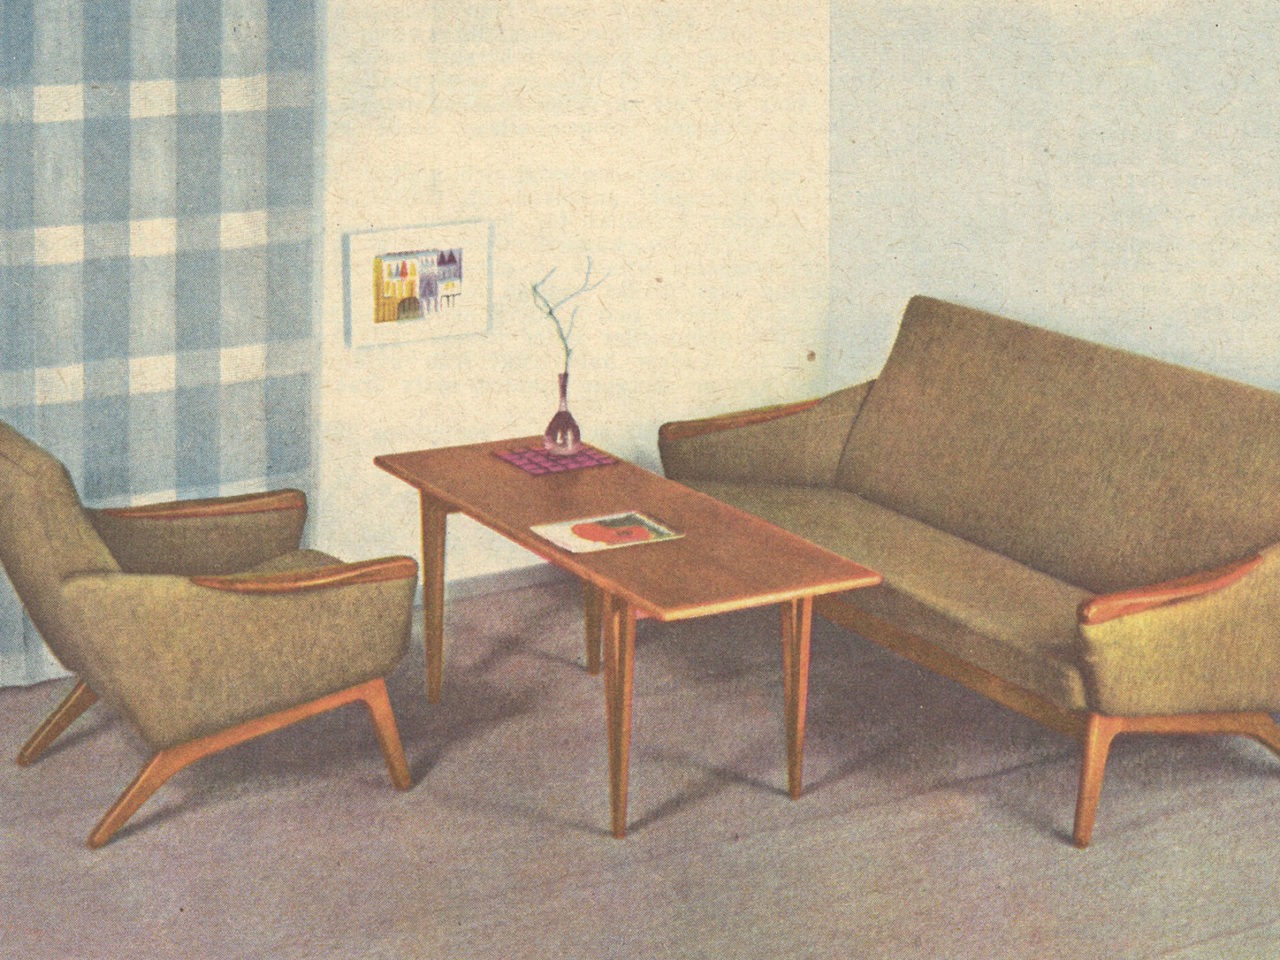 Couchtisch mit Sessel und Sofa, Modell SORÖ, in funktionalem Stil. Tisch- und Sitzgruppendetails aus braunem Holz.